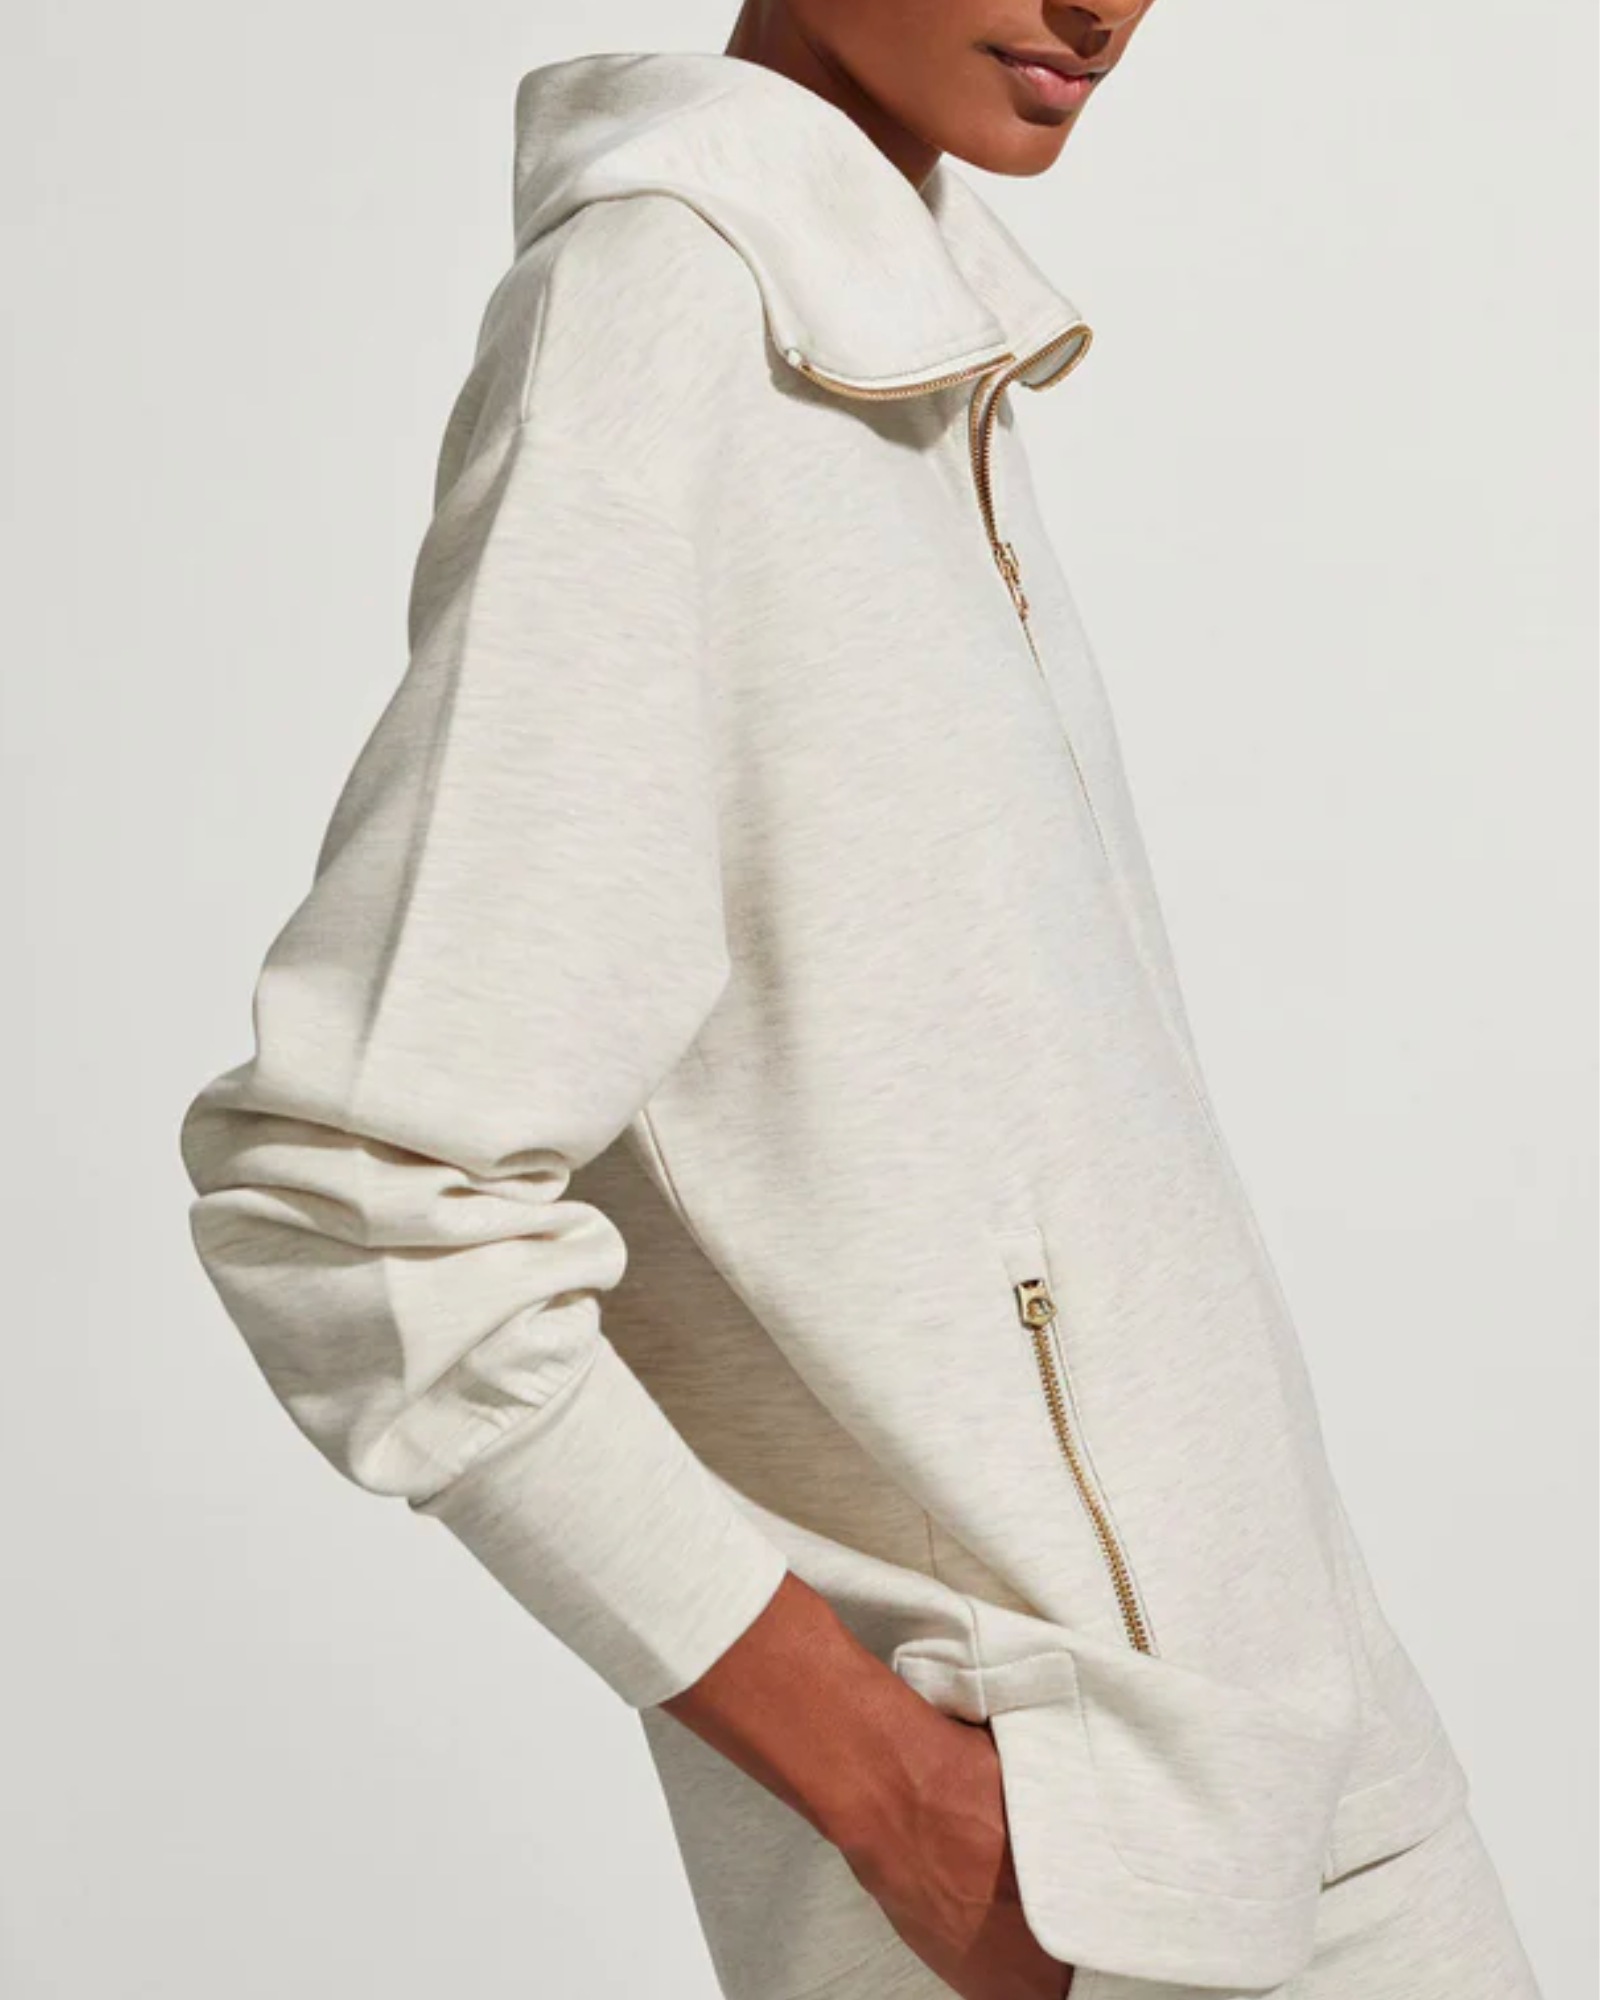 Varley Adair Zip Through Sweatshirt in Ivory Marl